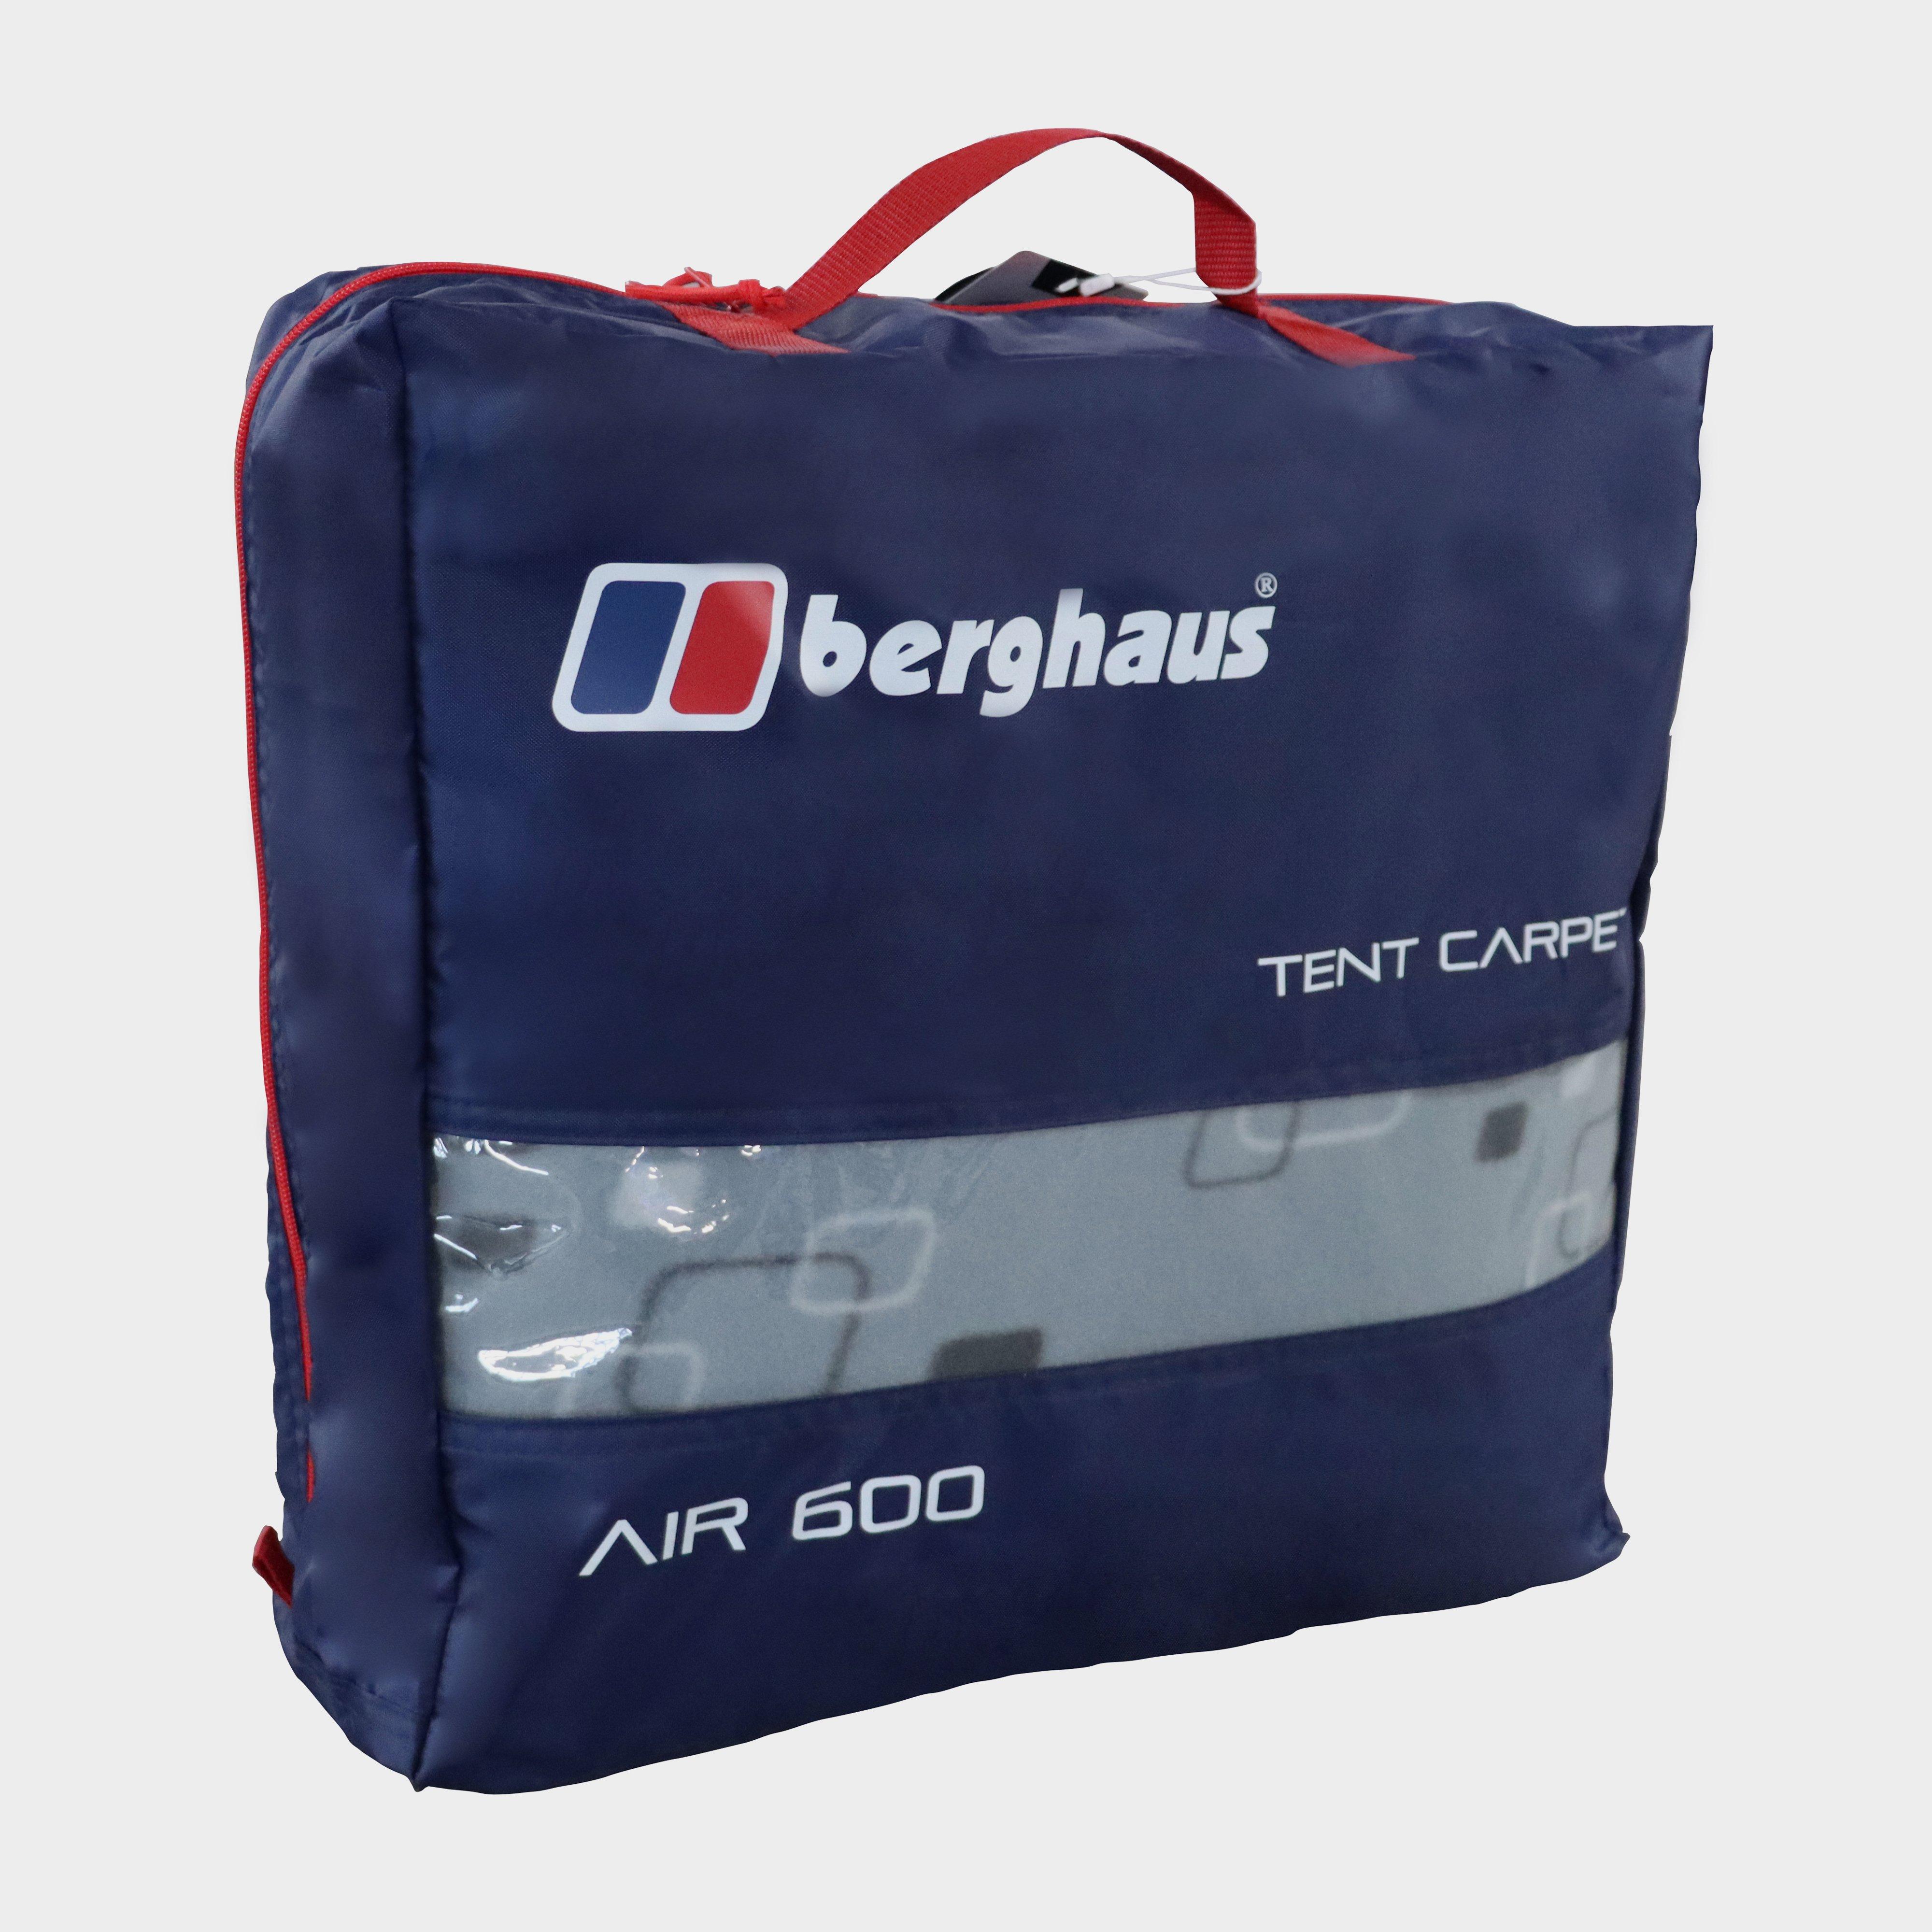 Berghaus Air 600/6.1/6 Tent Carpet - Dgy, DGY